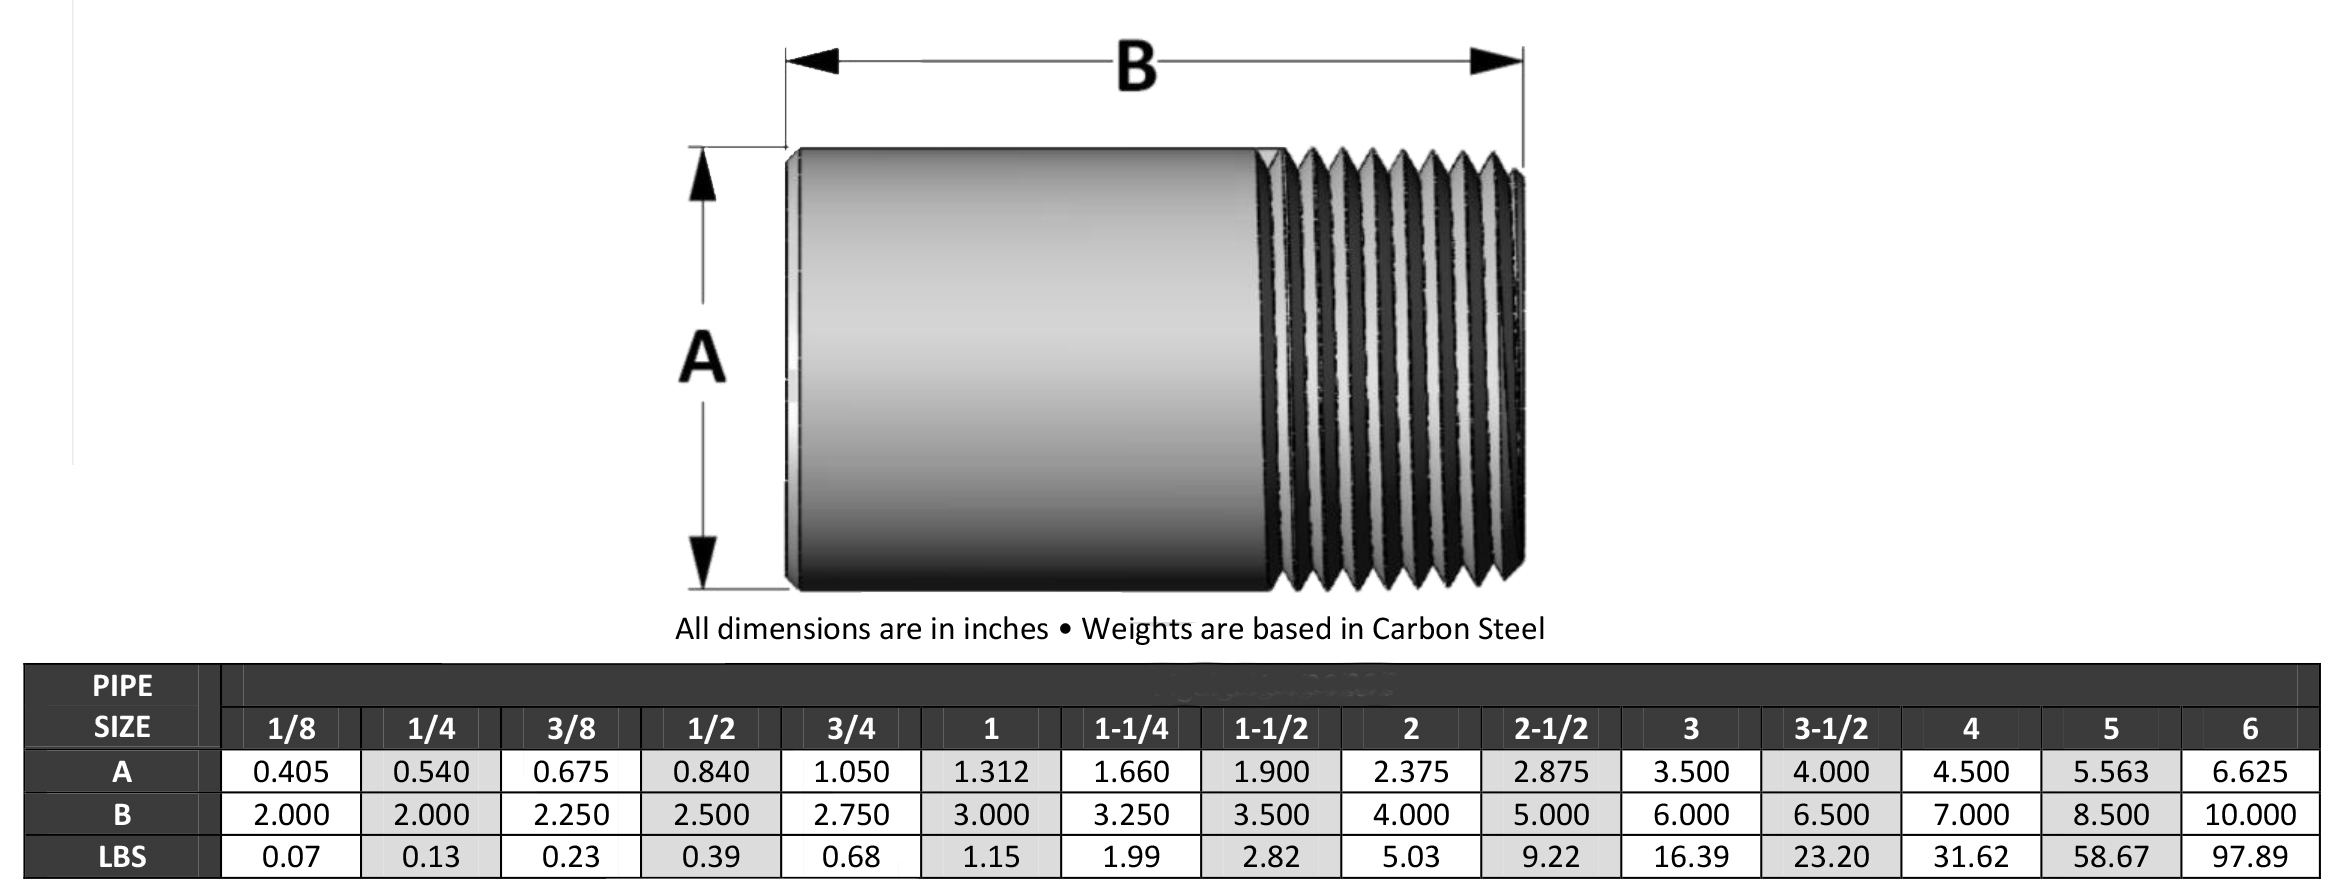 ASME B16.11 Bull Plug Dimensions